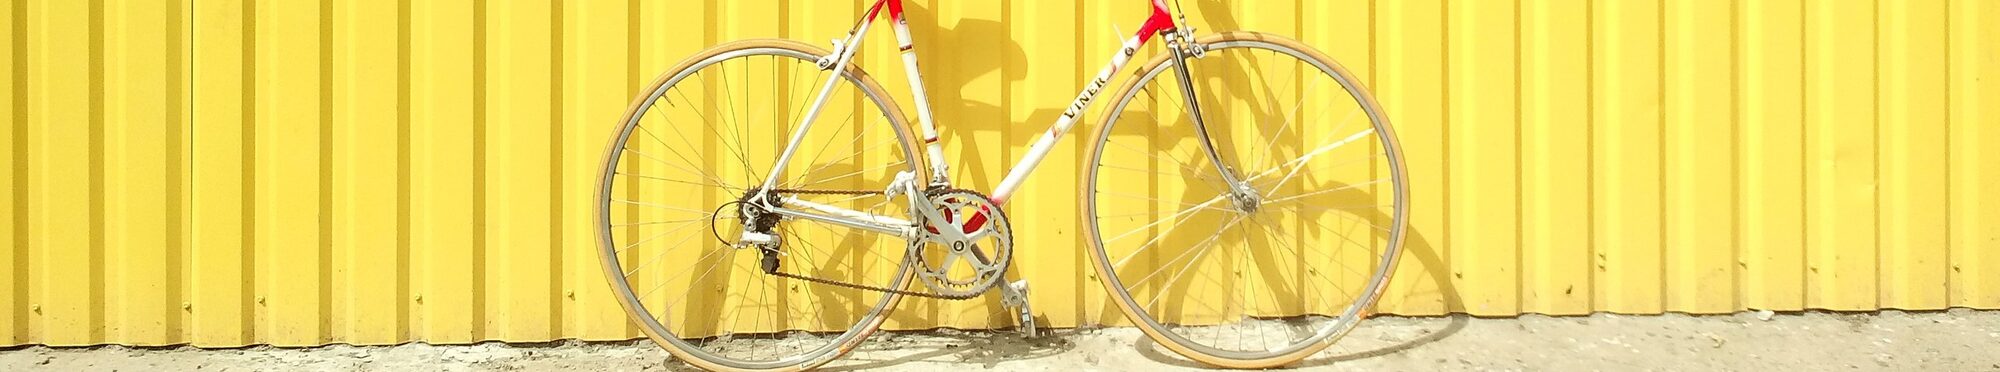 Fahrrad vor gelber Wand